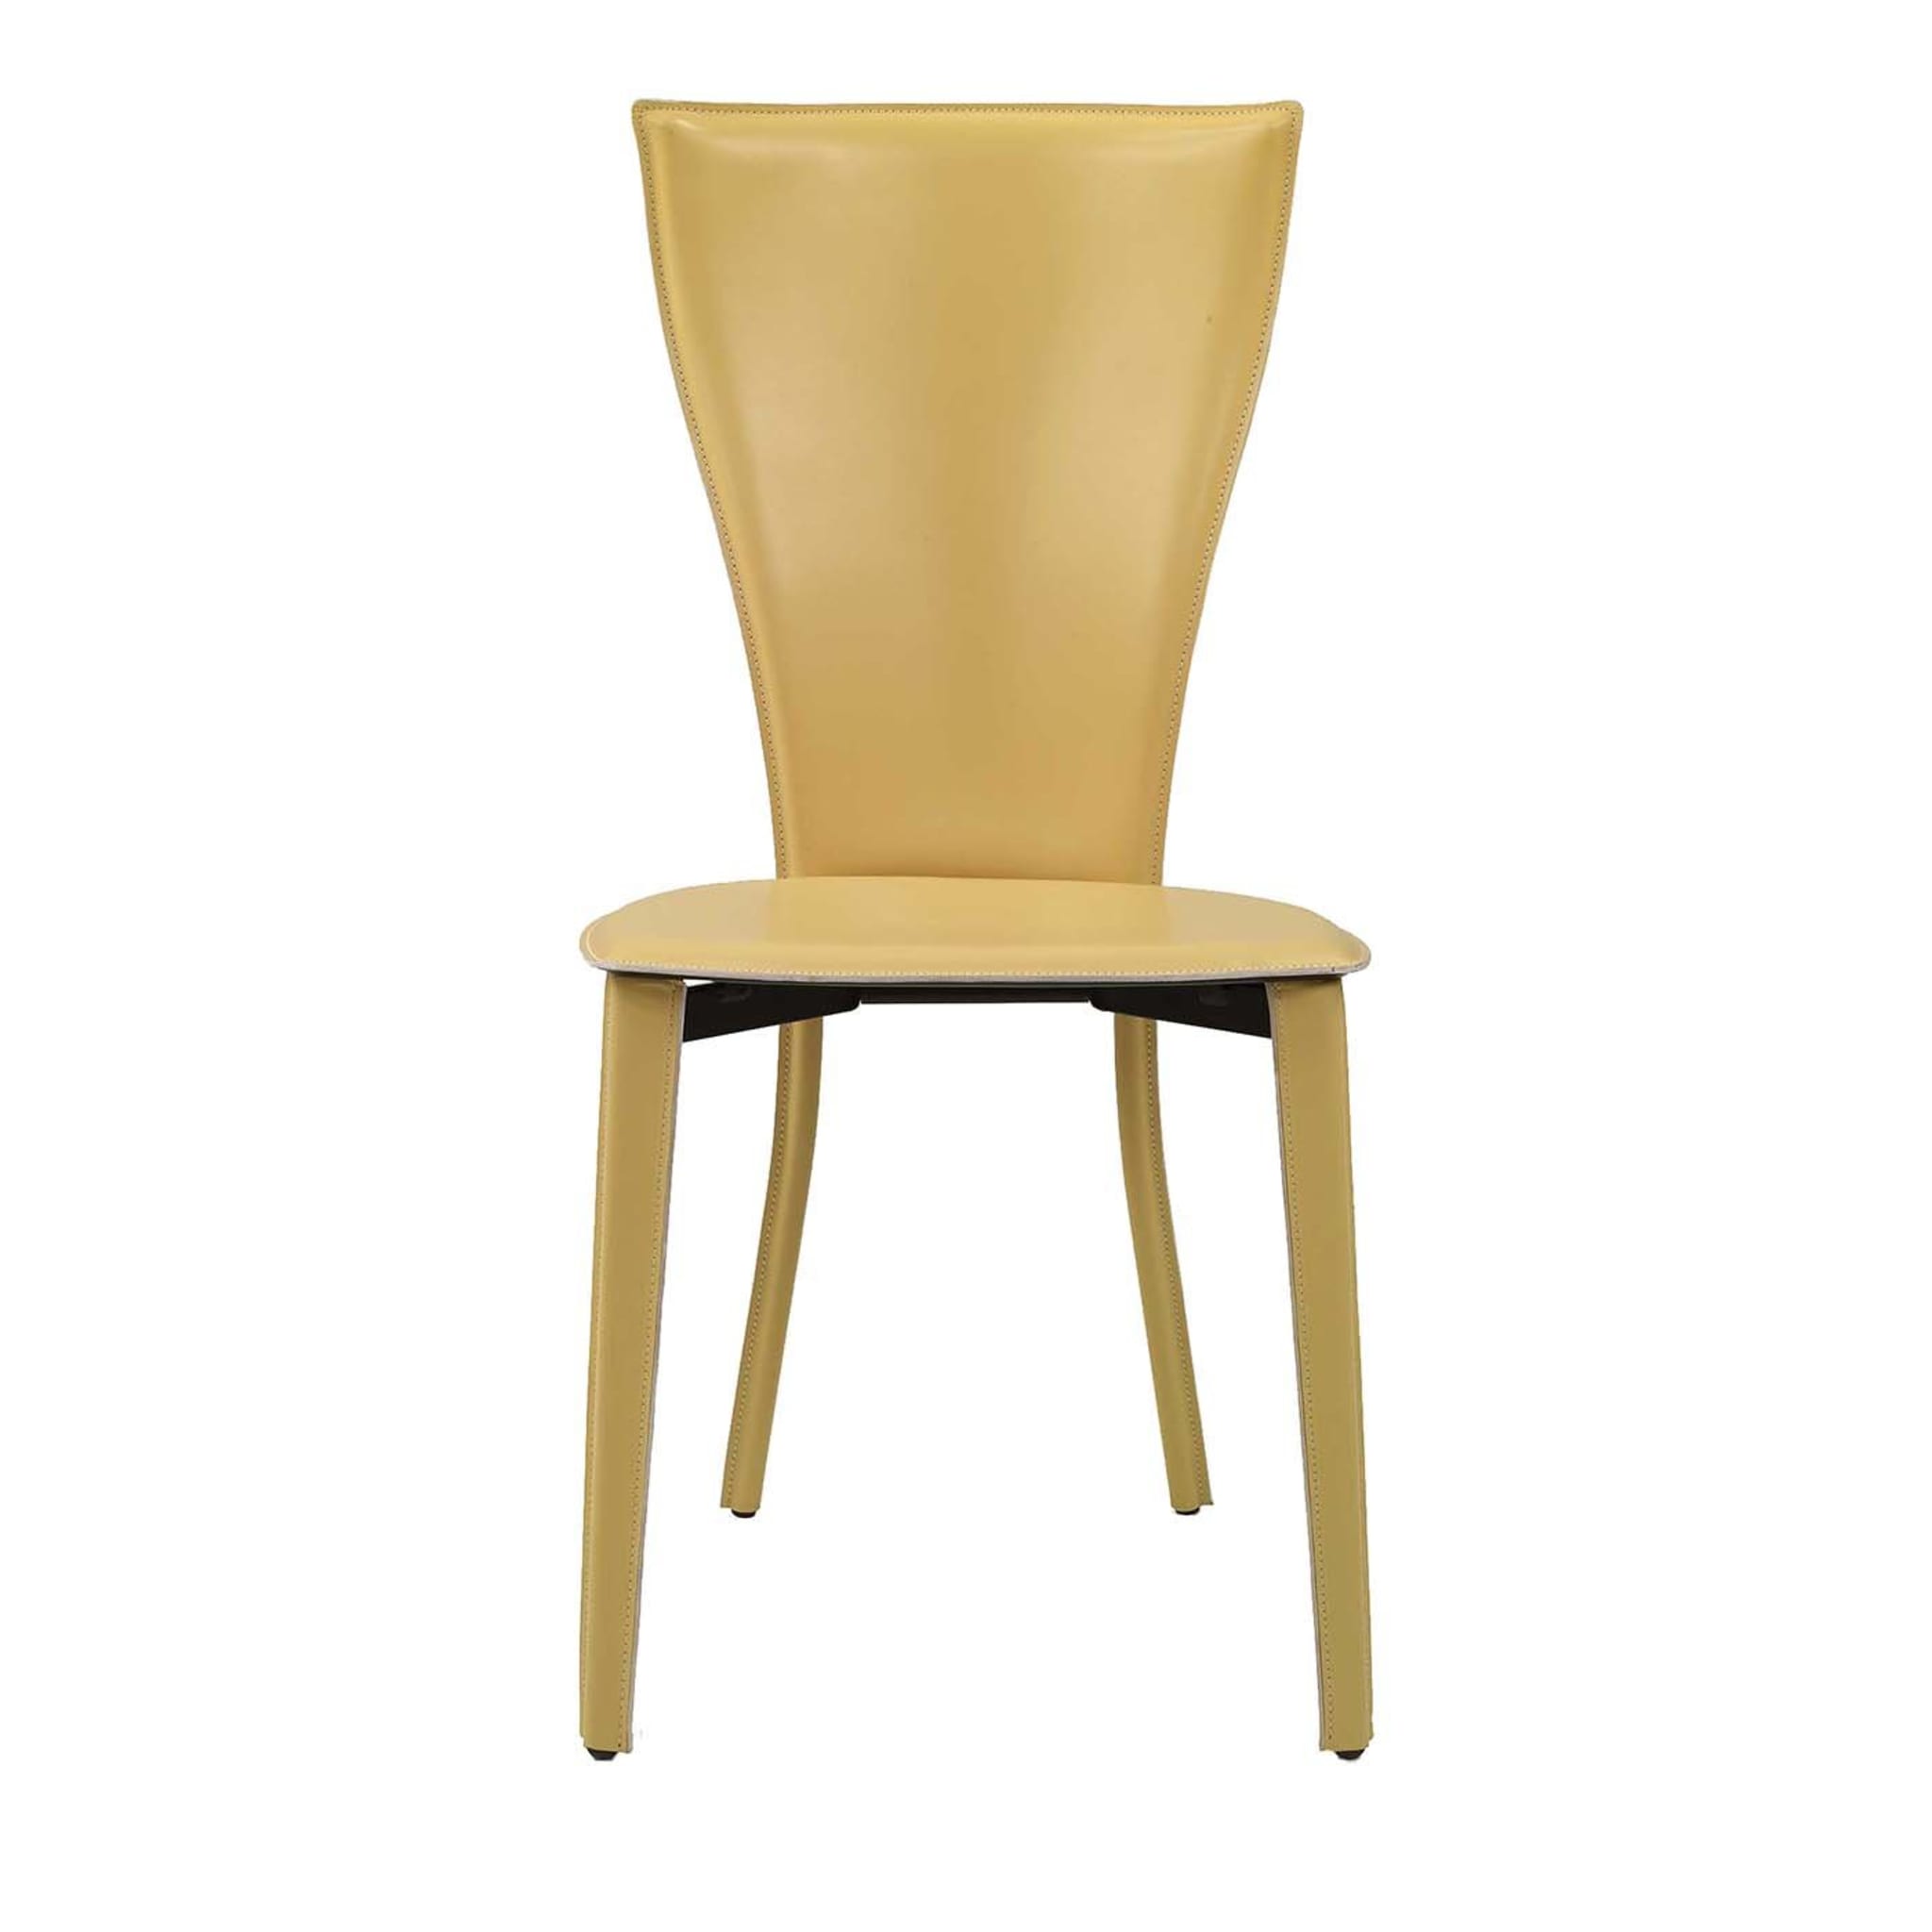 Carlotta Chair by Cappelletti&Pozzoli - Main view